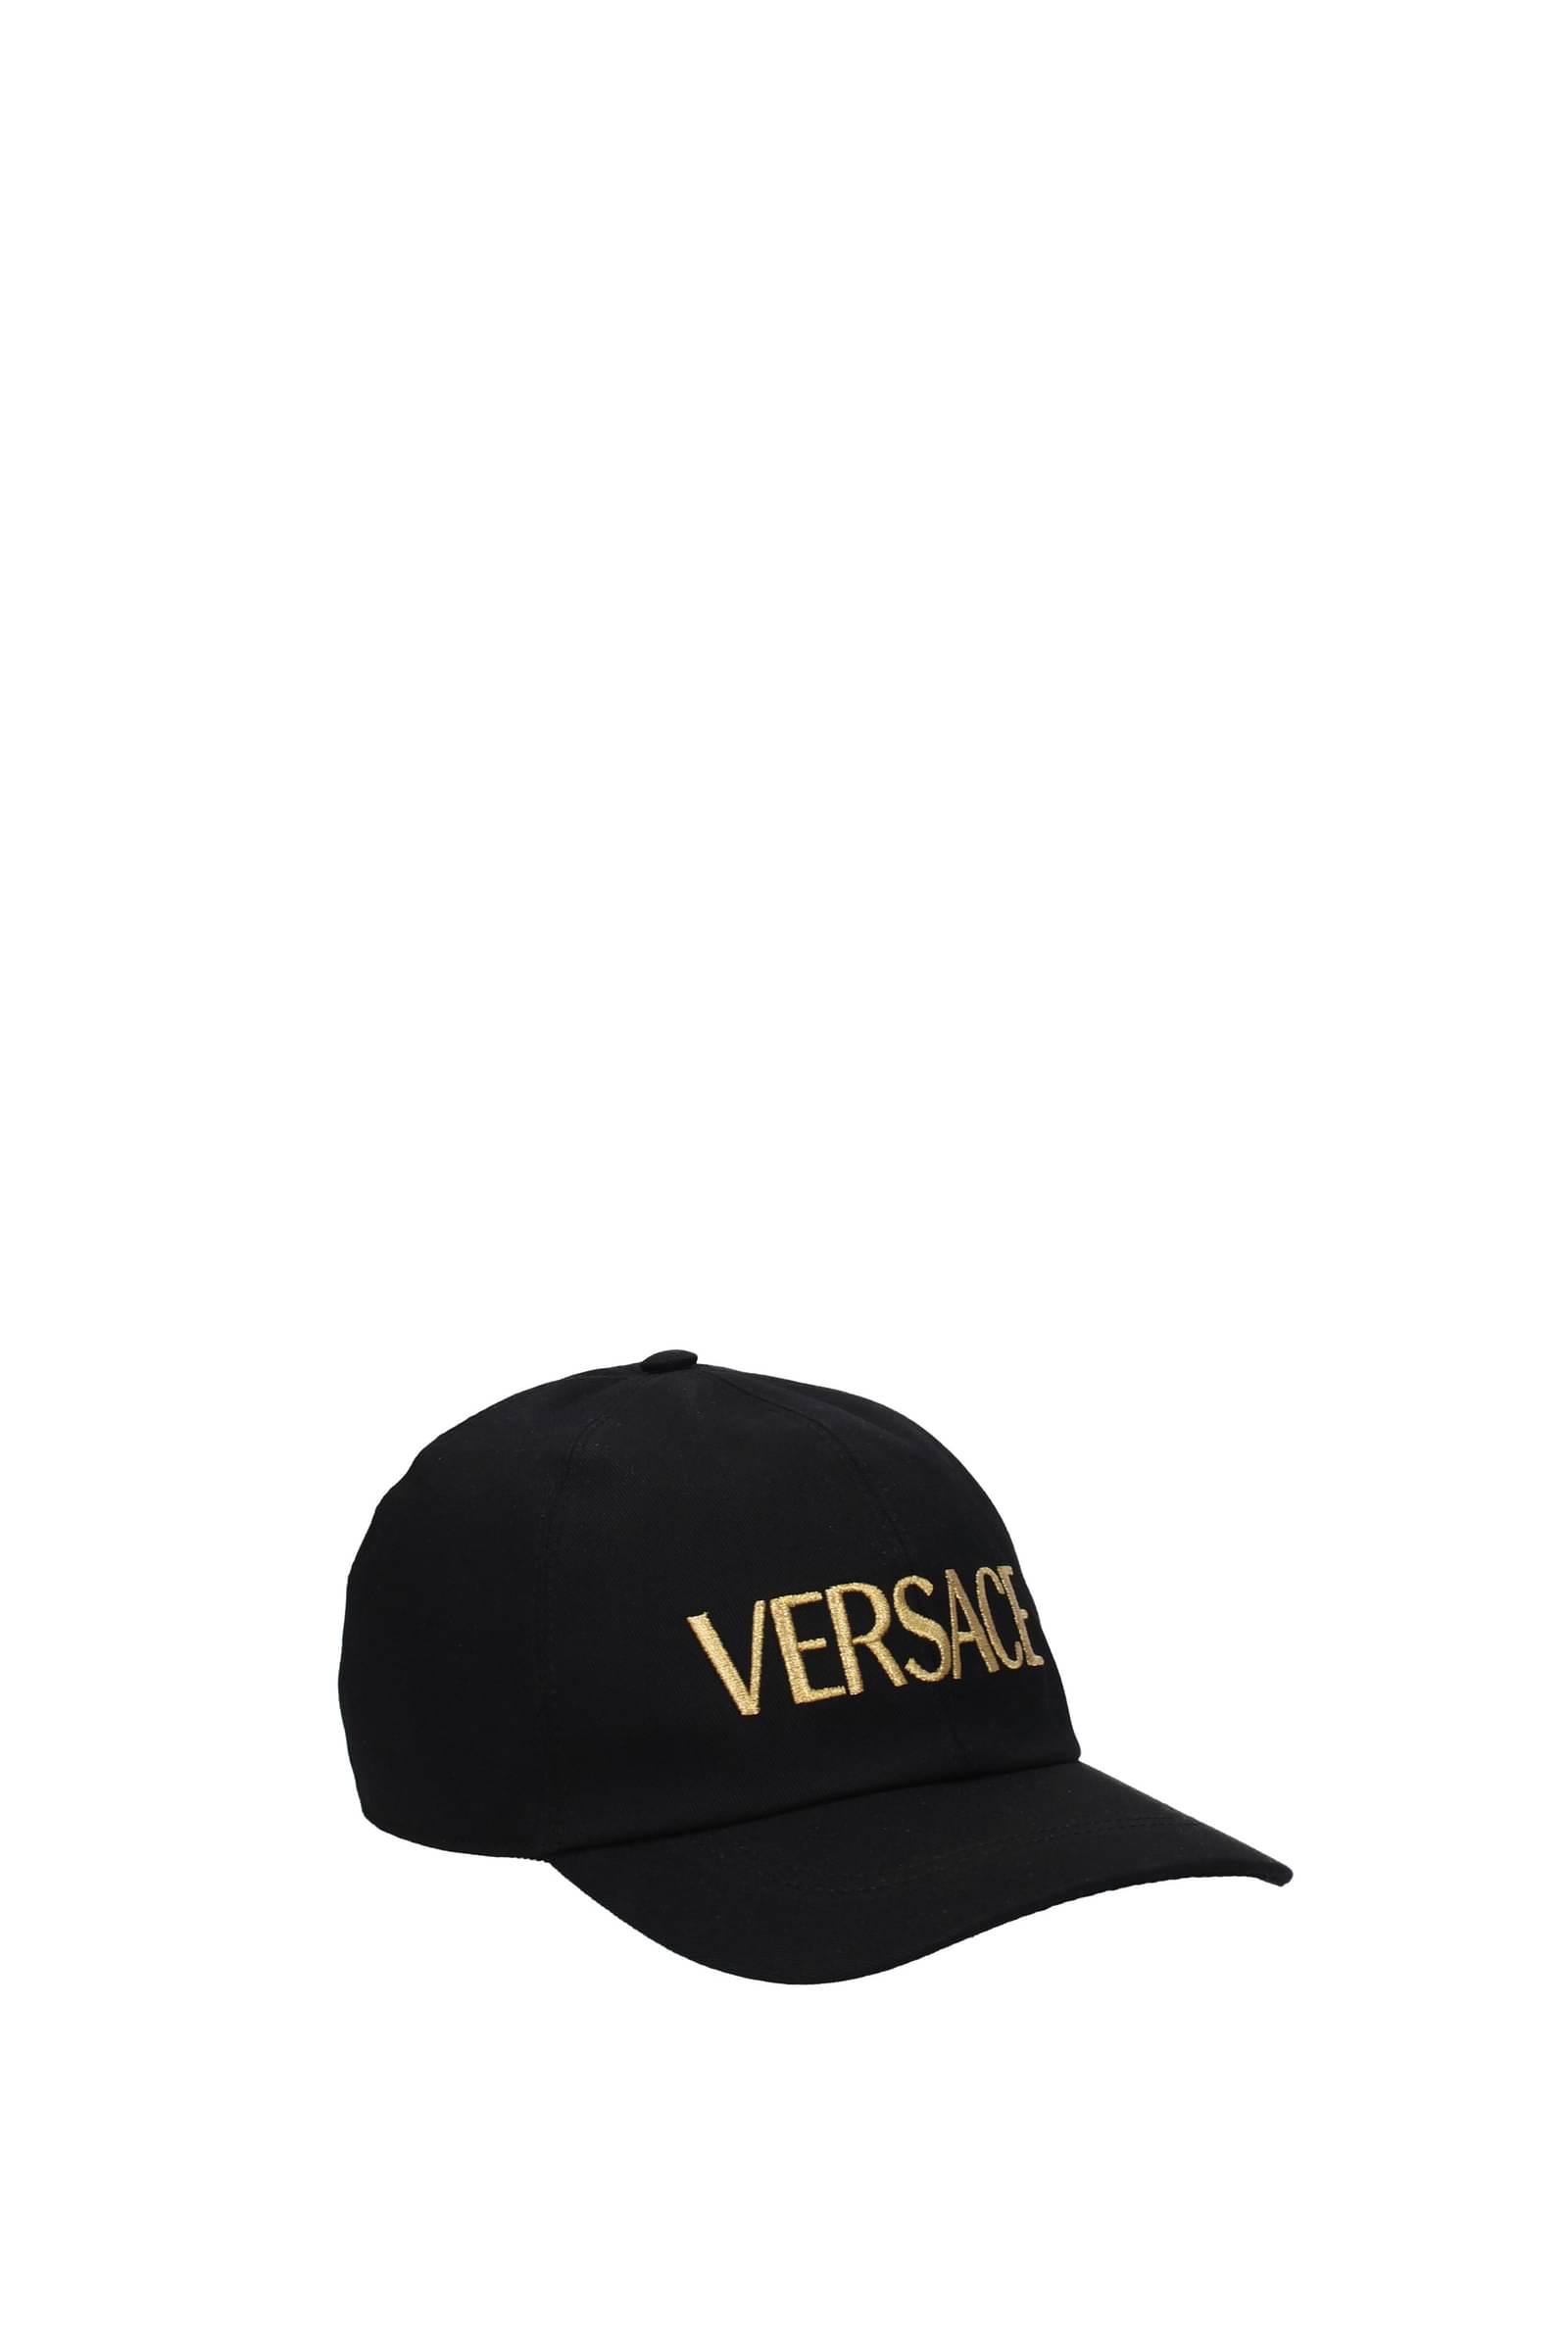 versace-cappelli cotone nero oro-donna